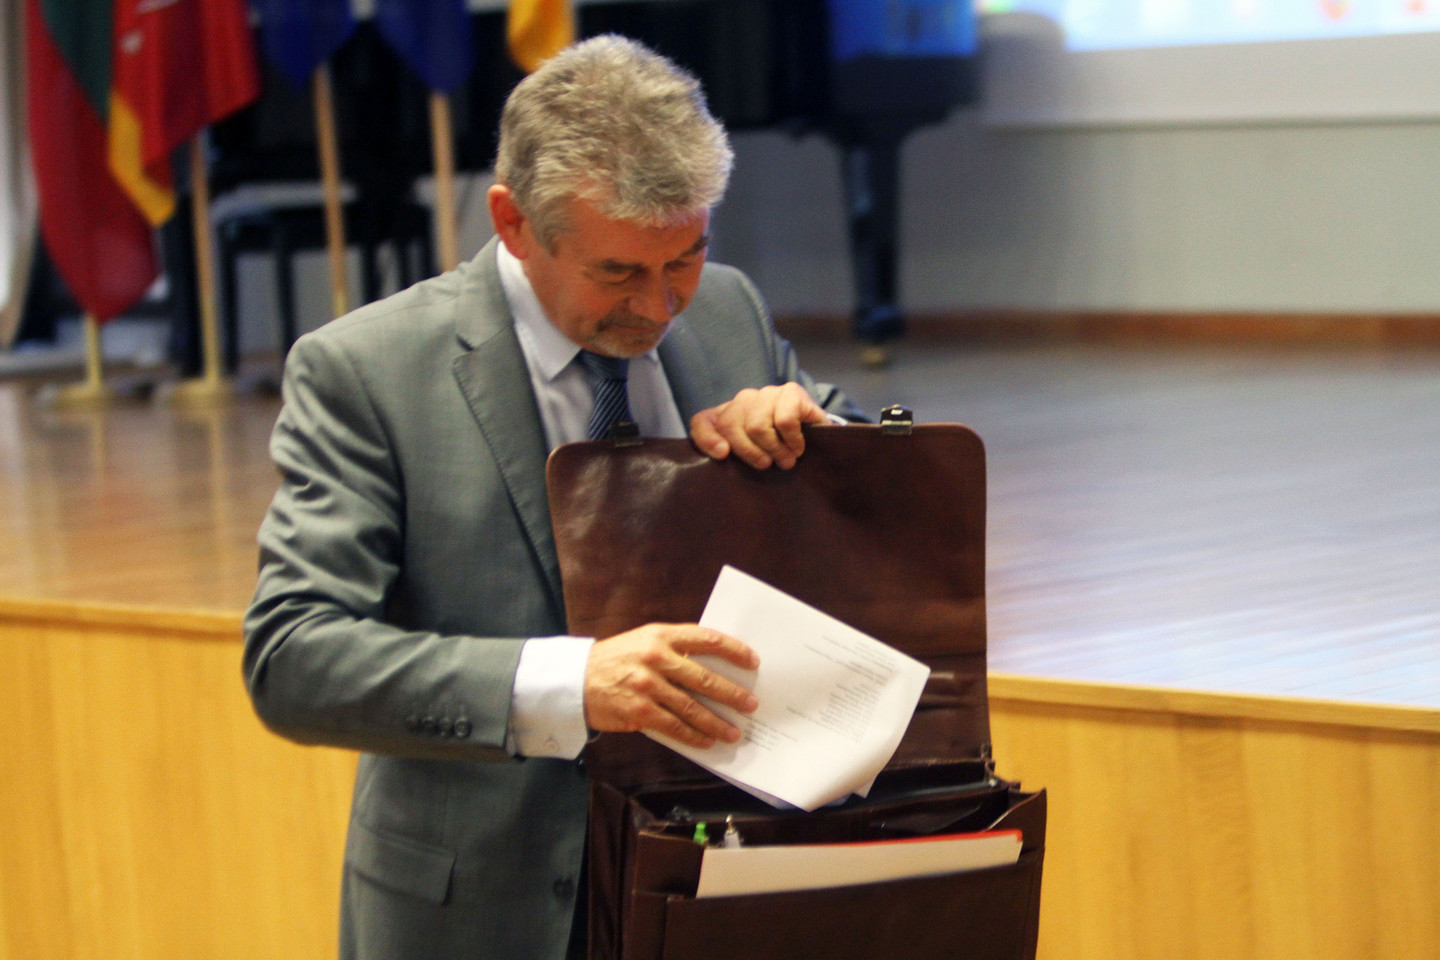 Kauno klinikų Chirurgijos klinikos vadovas profesorius Juozas Pundzius pareiškė rinkimuose nedalyvausiantis dėl procedūrinių pažeidimų.<br>M.Patašiaus nuotr.